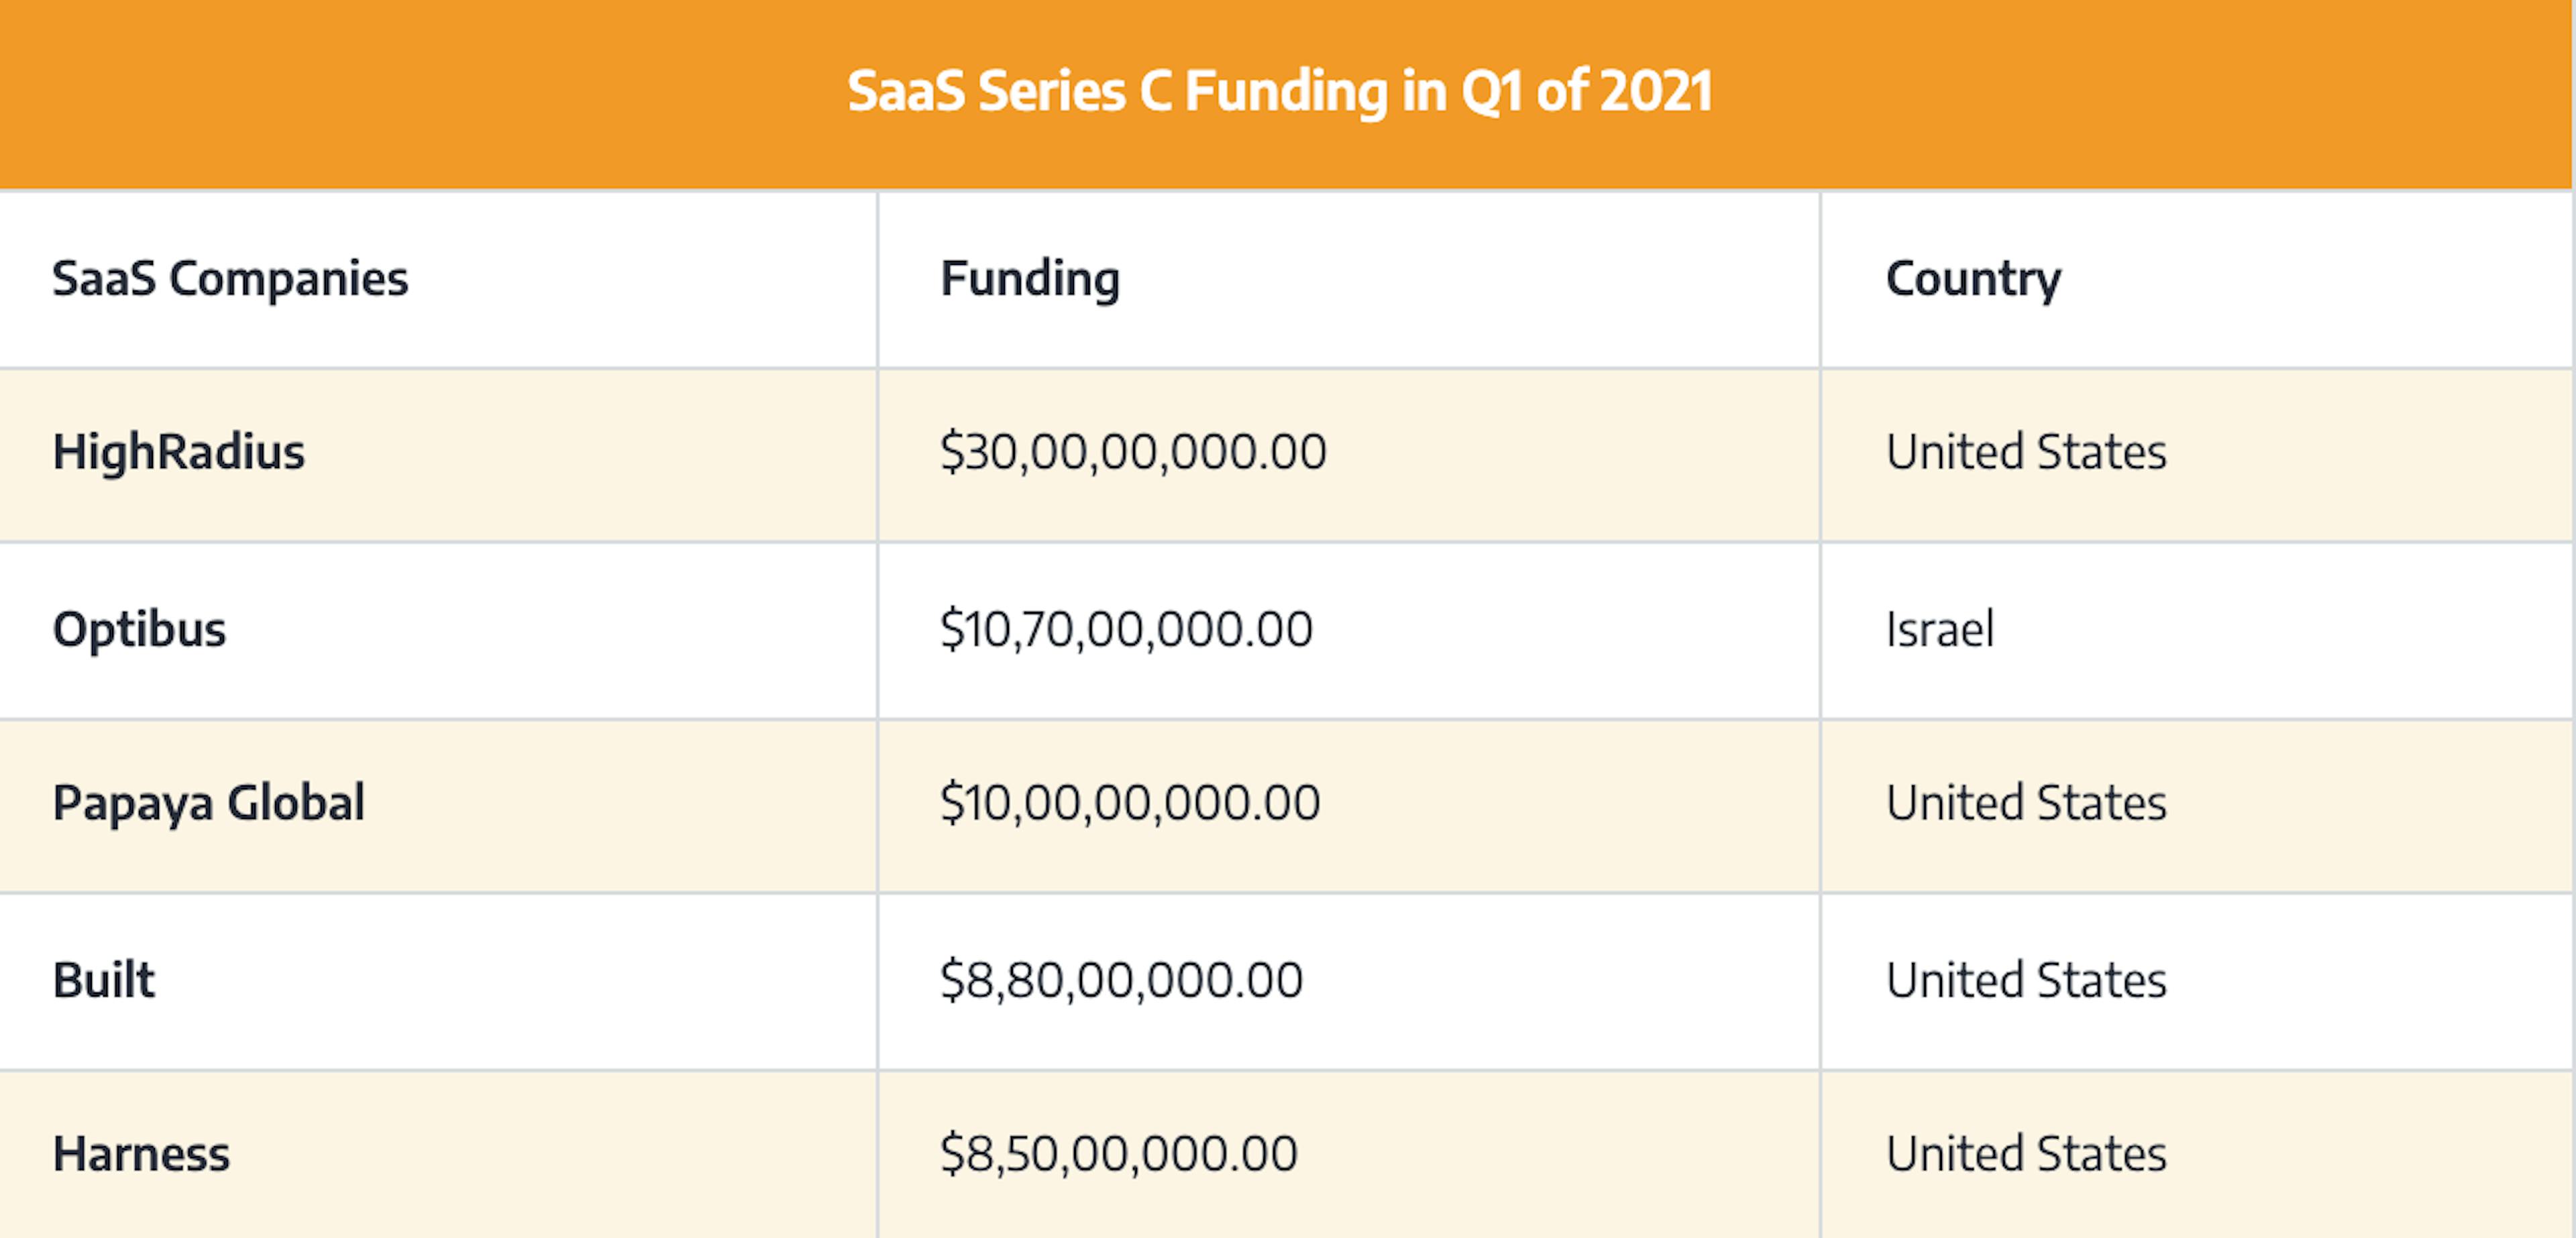 SaaS Series C Funding Amounts in Q1 of 2021